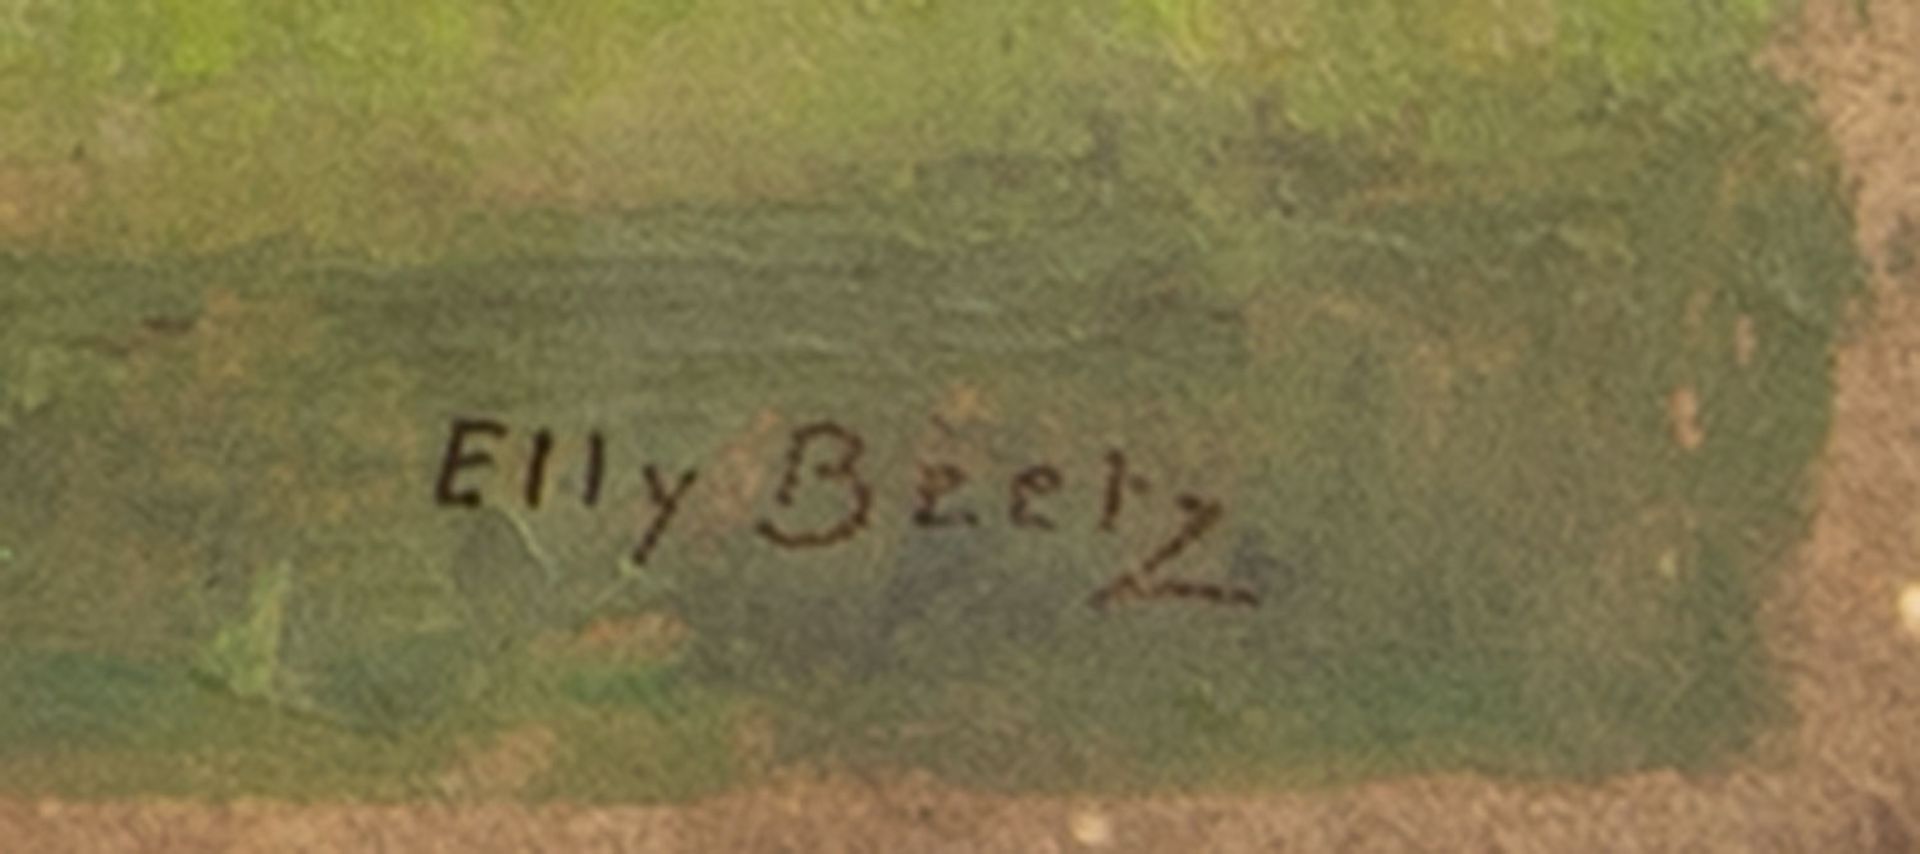 Elly Beetz - Bild 2 aus 2